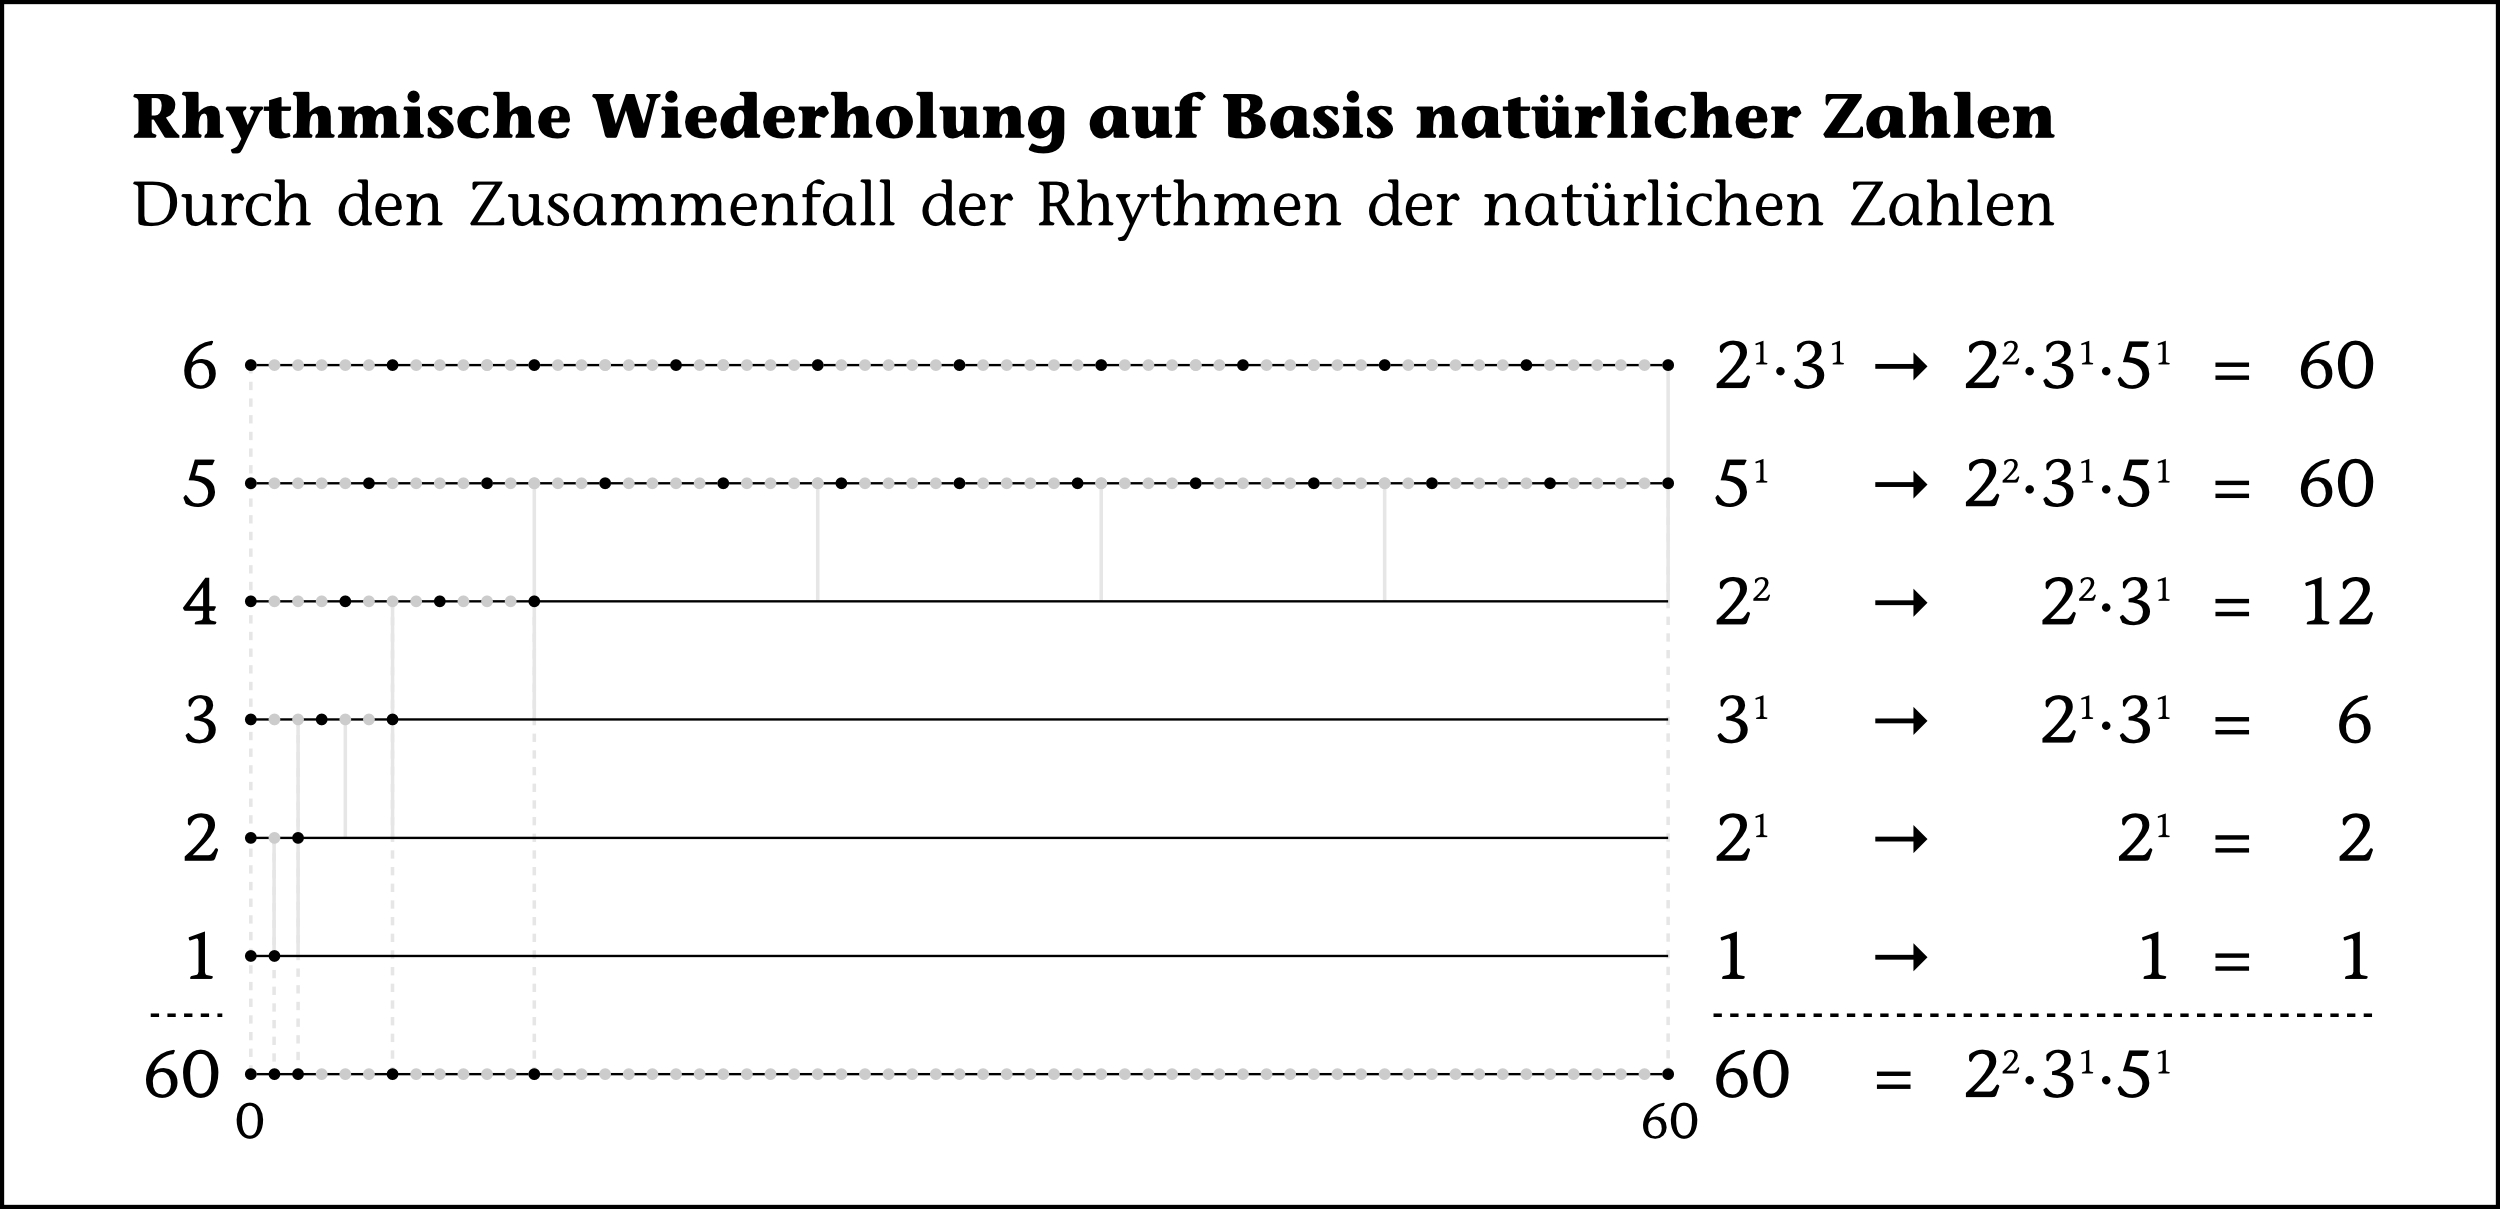 Rhythmische Wiederholung auf Basis natürlicher Zahlen